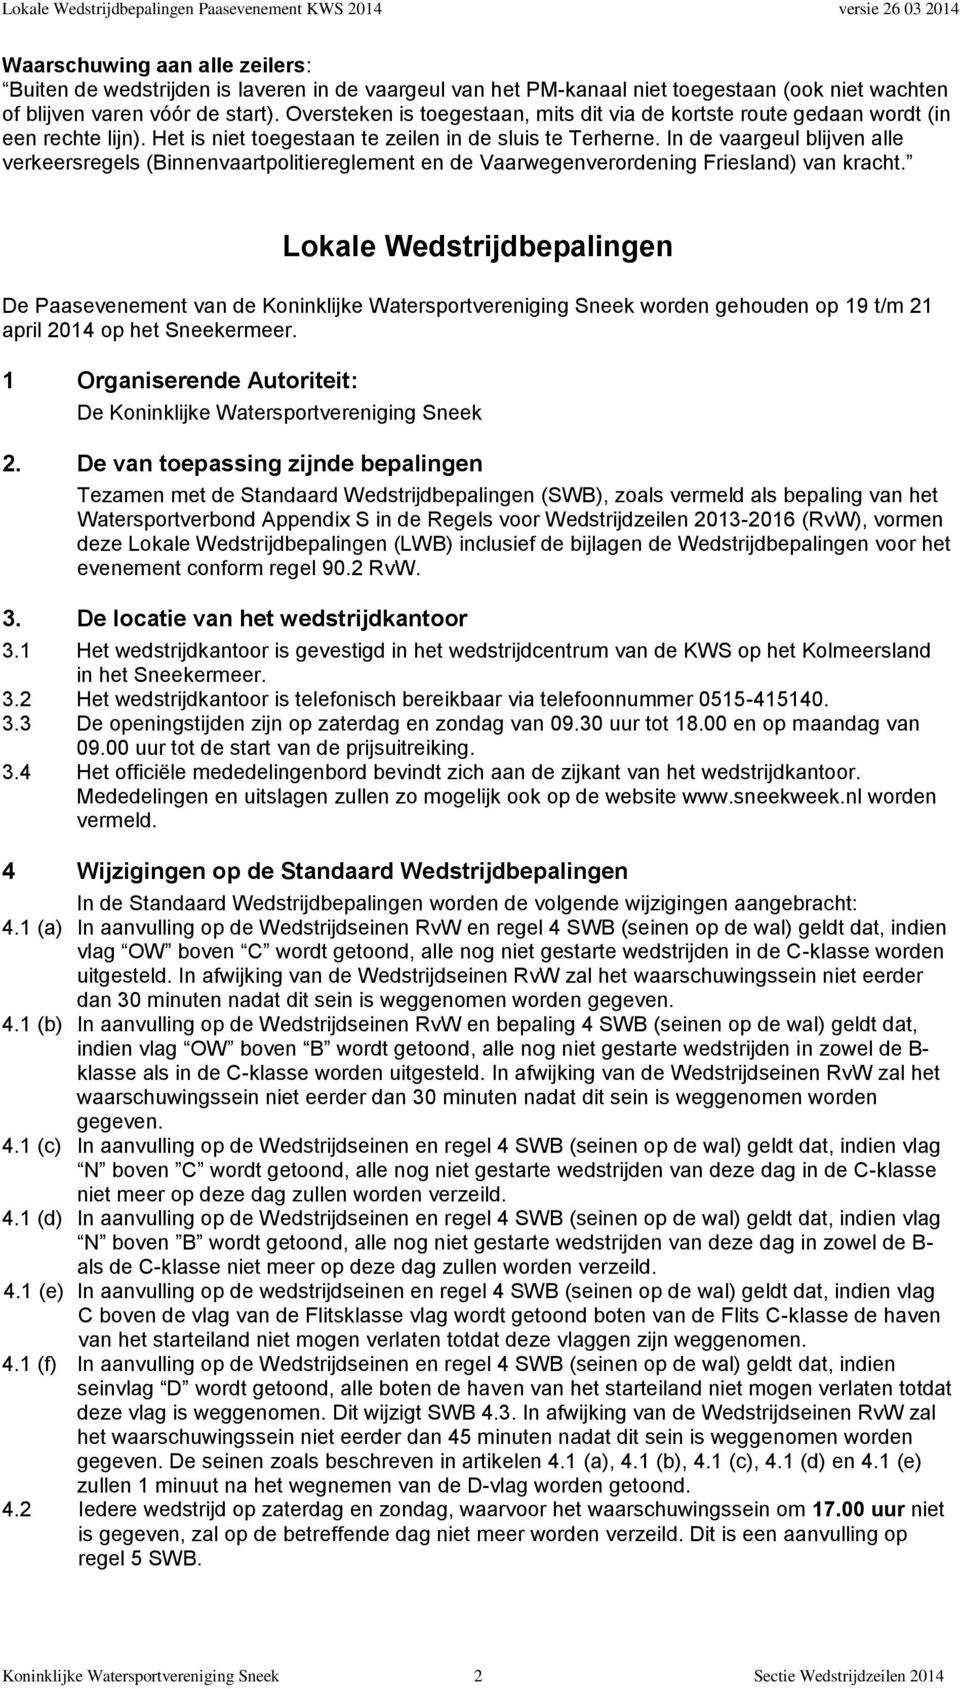 In de vaargeul blijven alle verkeersregels (Binnenvaartpolitiereglement en de Vaarwegenverordening Friesland) van kracht.